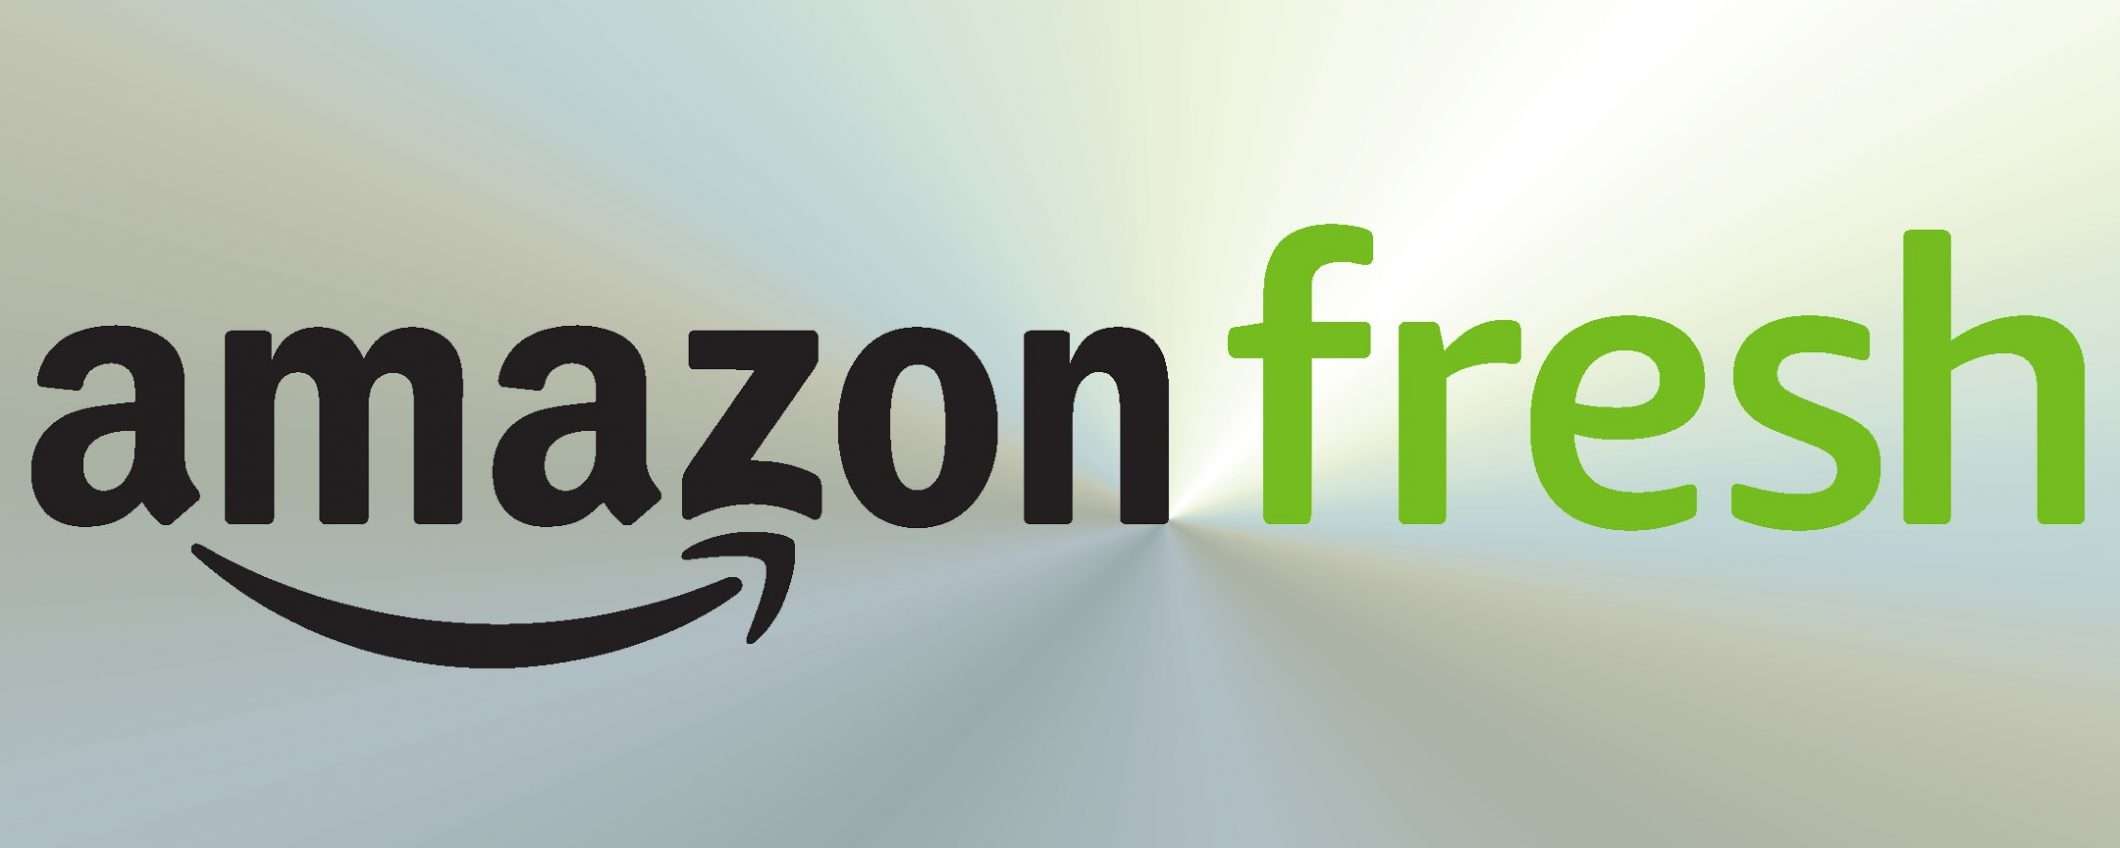 Amazon Fresh, esordio a Milano: la spesa si fa da casa